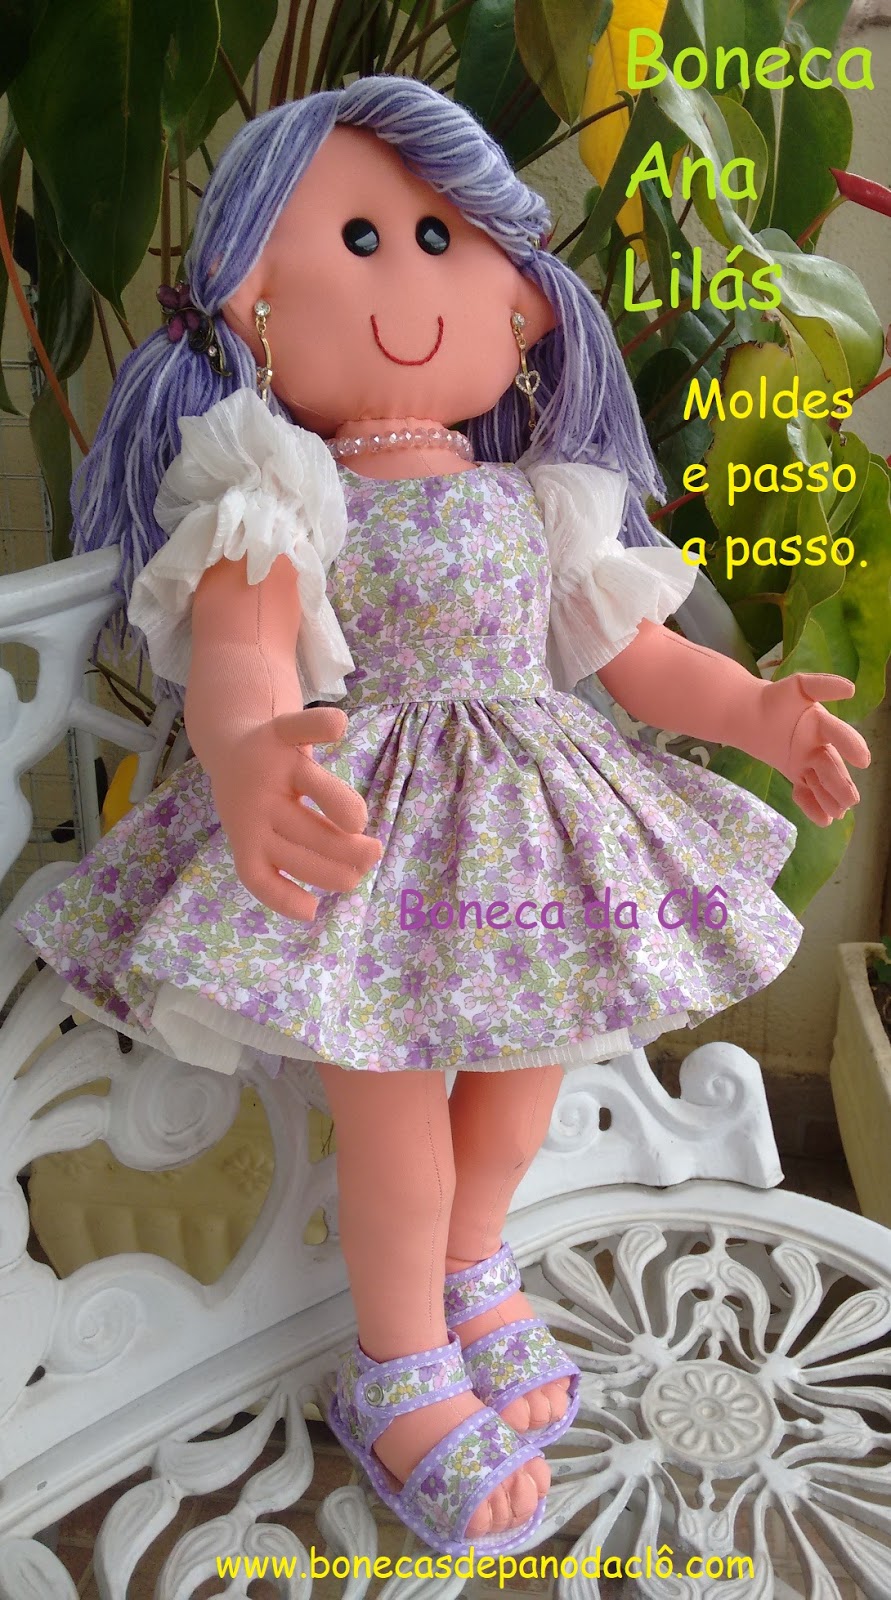 Bonecas De Pano Da Clô: Moldes das Roupas da Ana Lilás